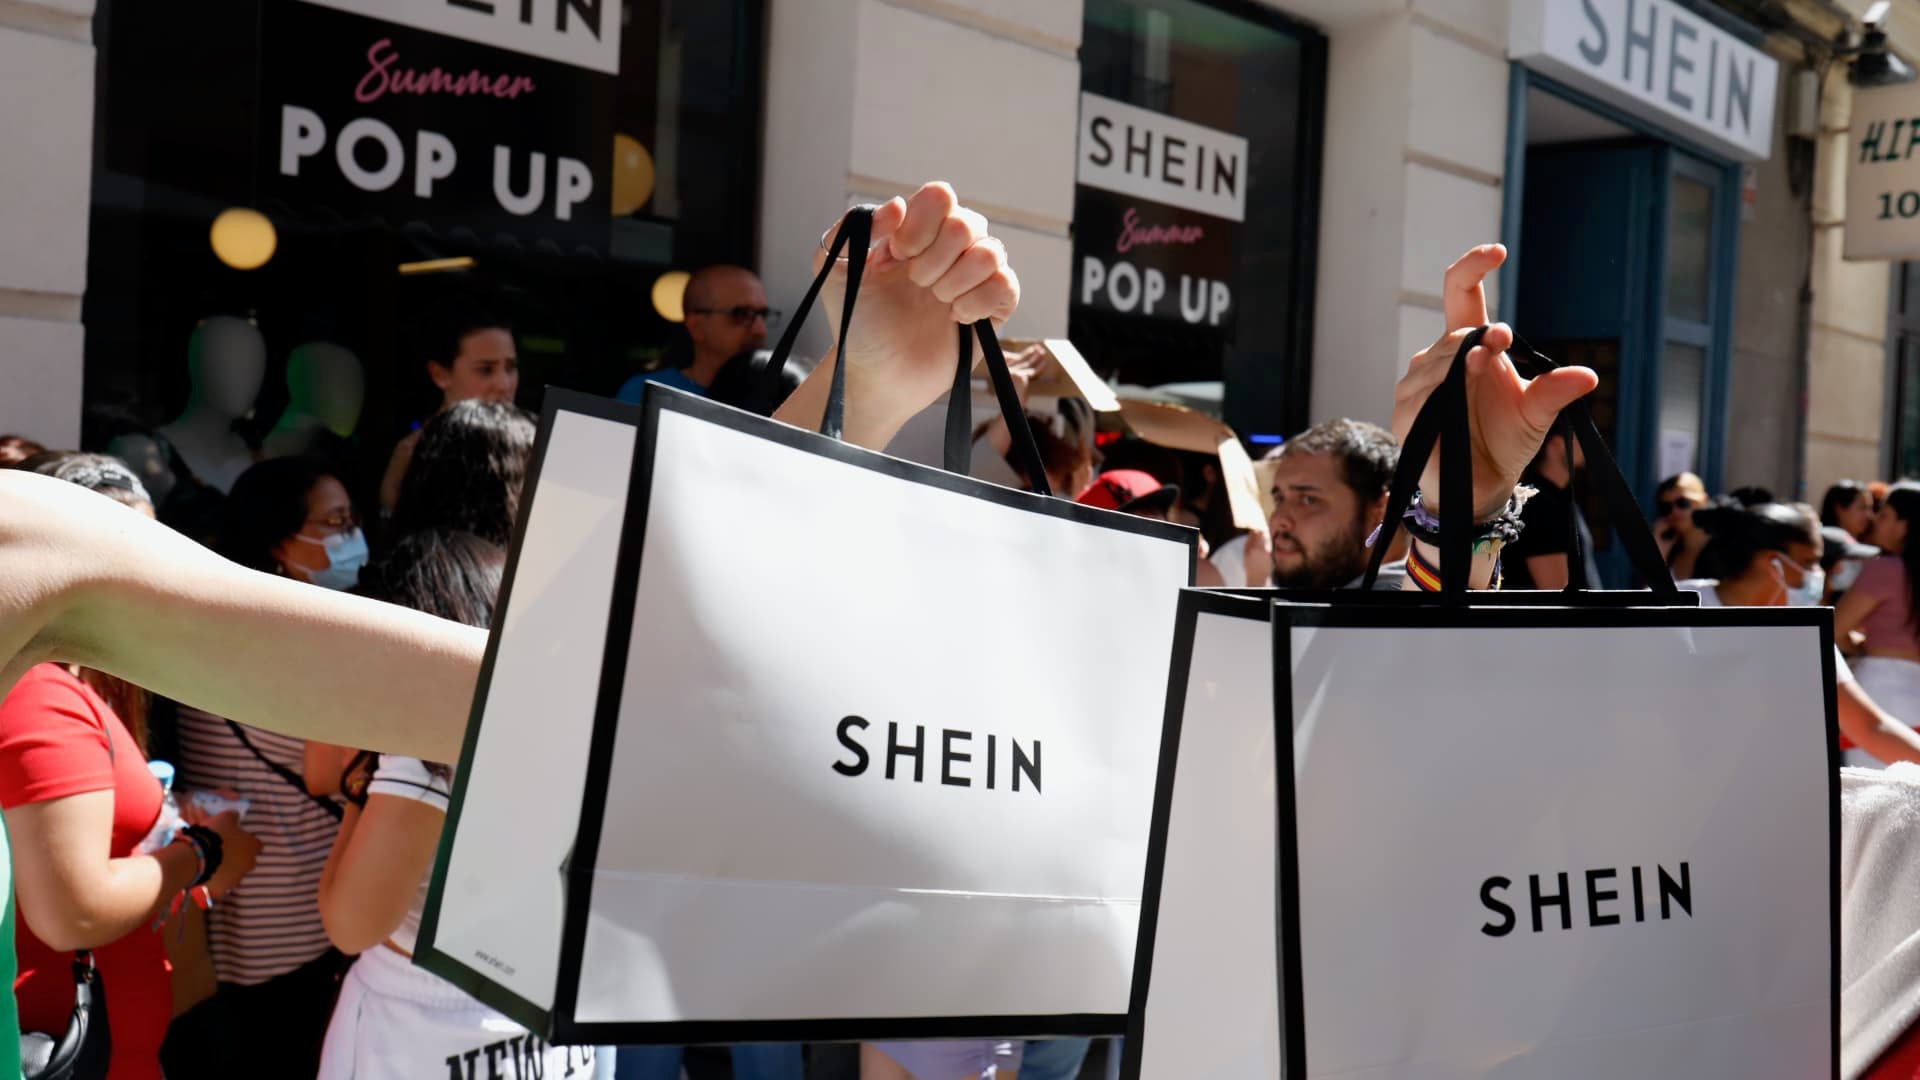 EXCLUSIVO: Gigante de moda chinesa Shein prepara seu desembarque oficial no  Brasil - NeoFeed